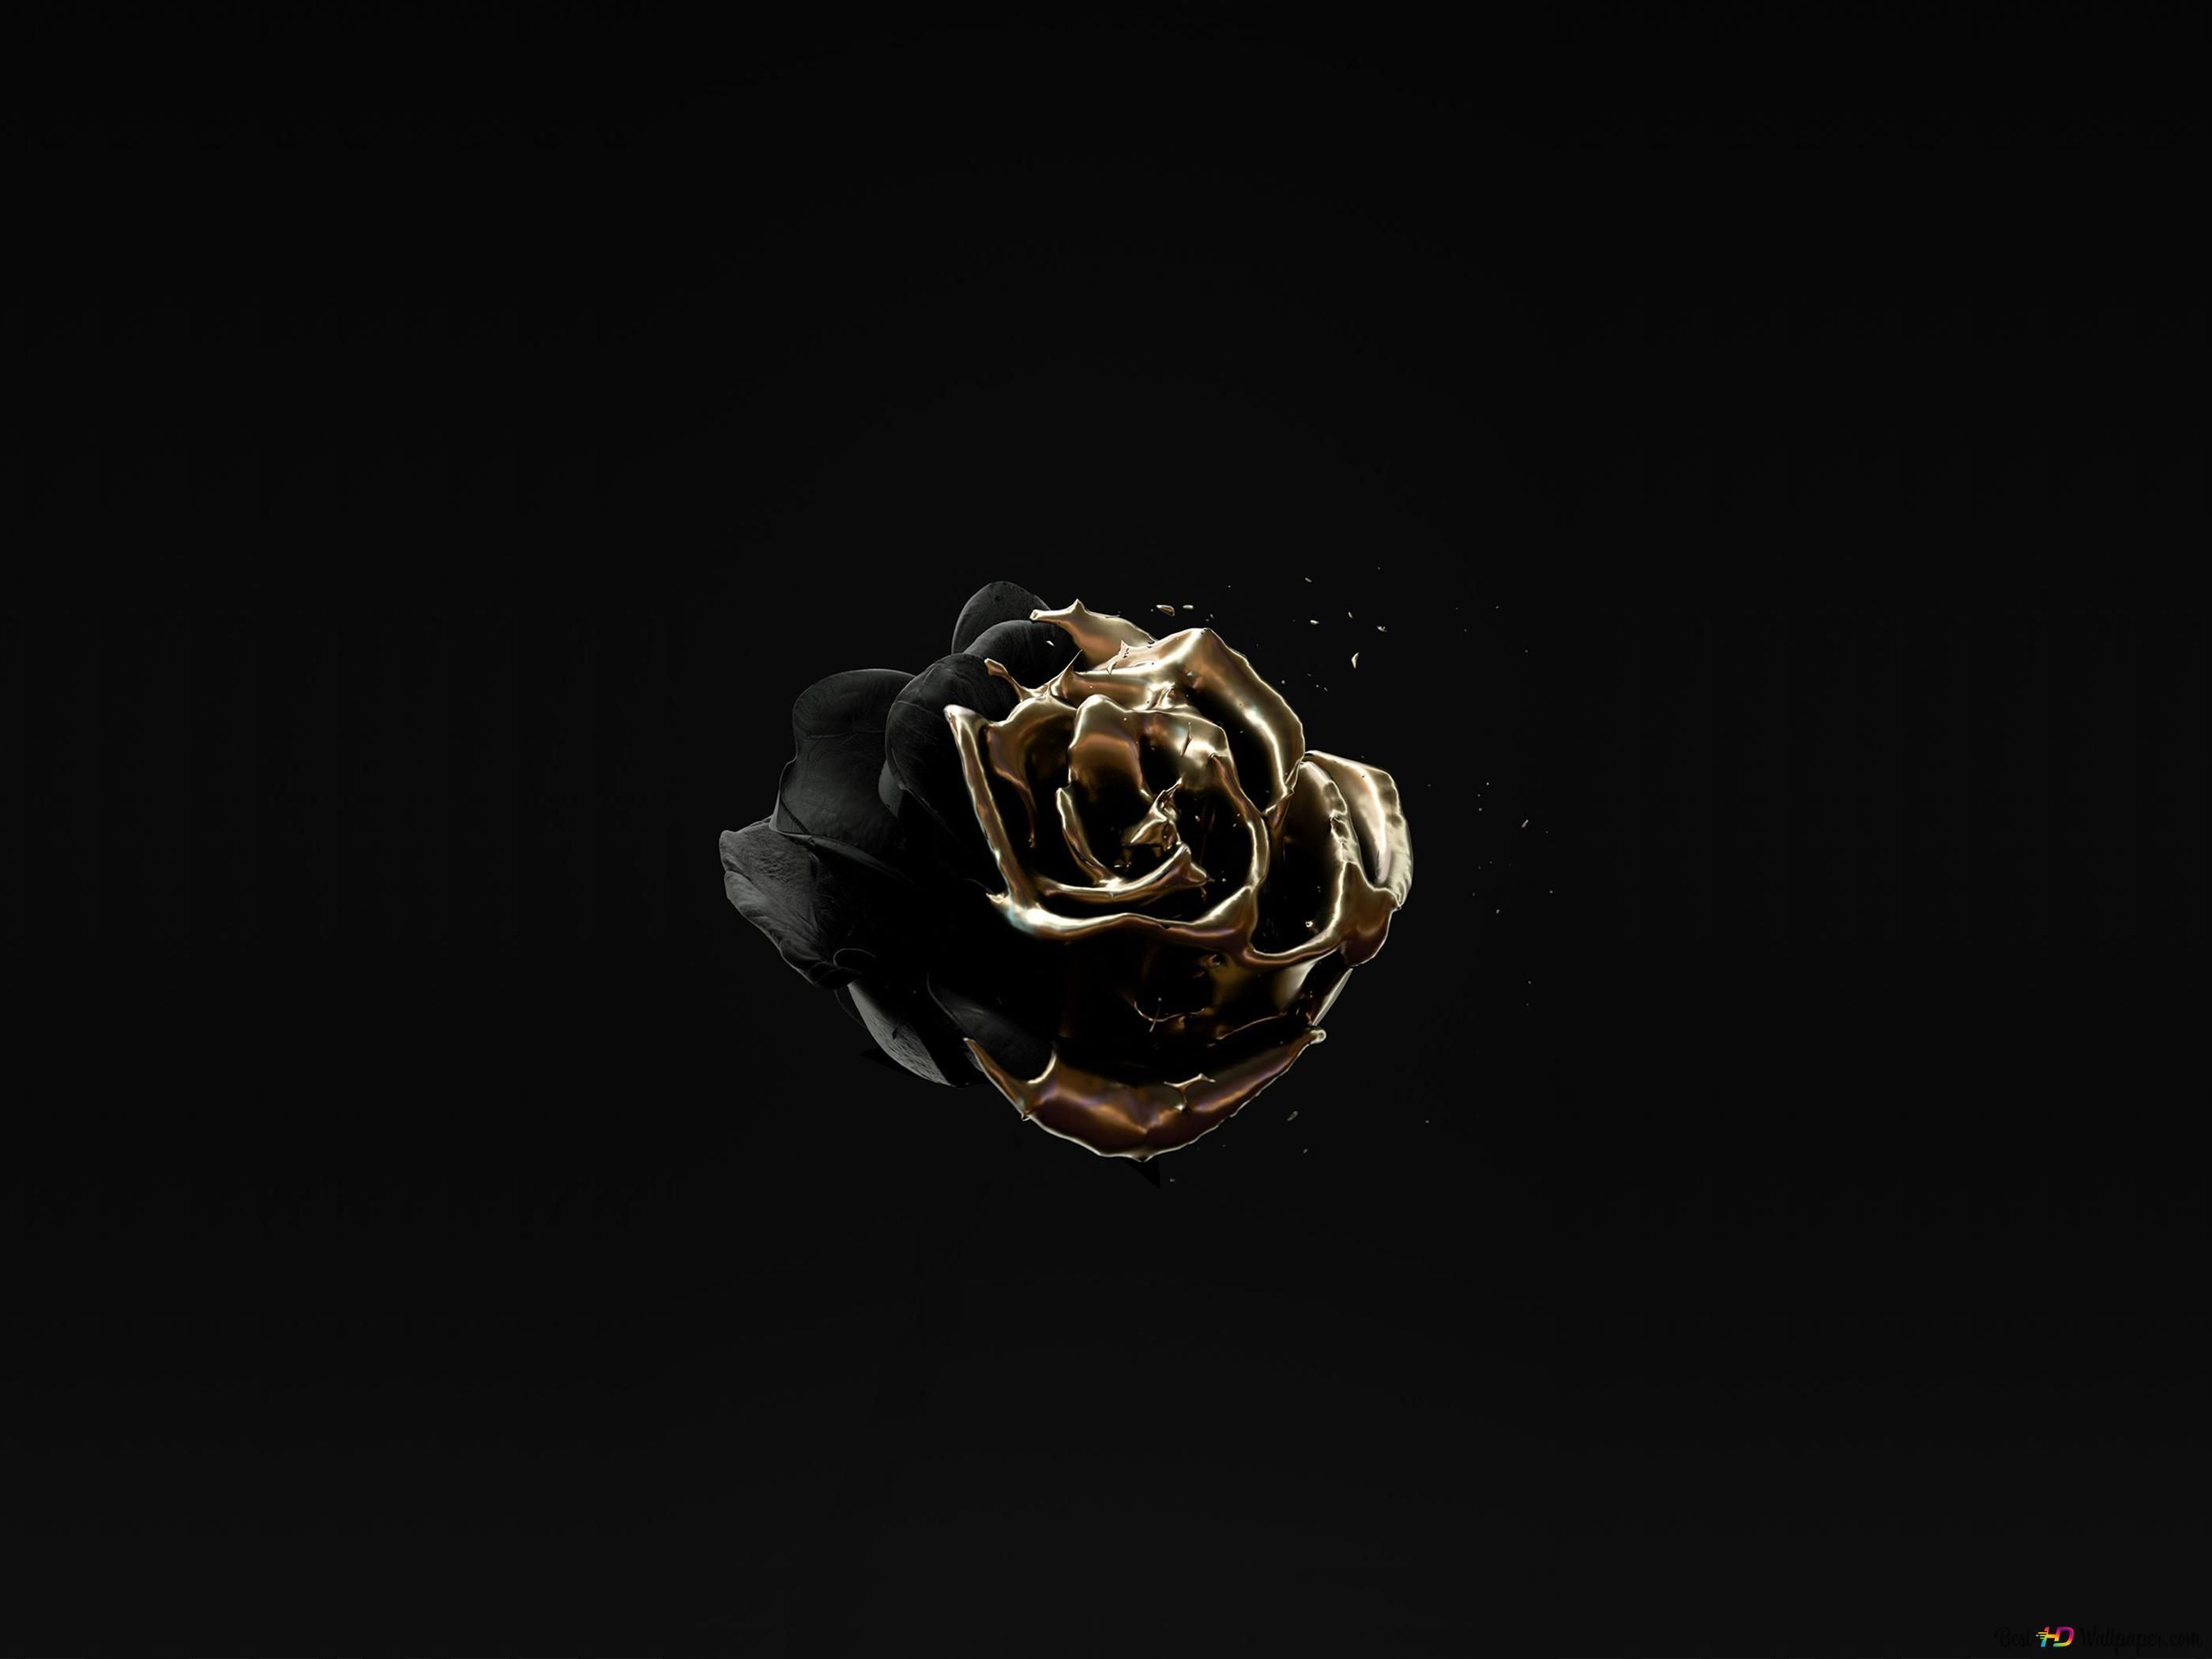 Image of rose gold color on black background 4K wallpaper download